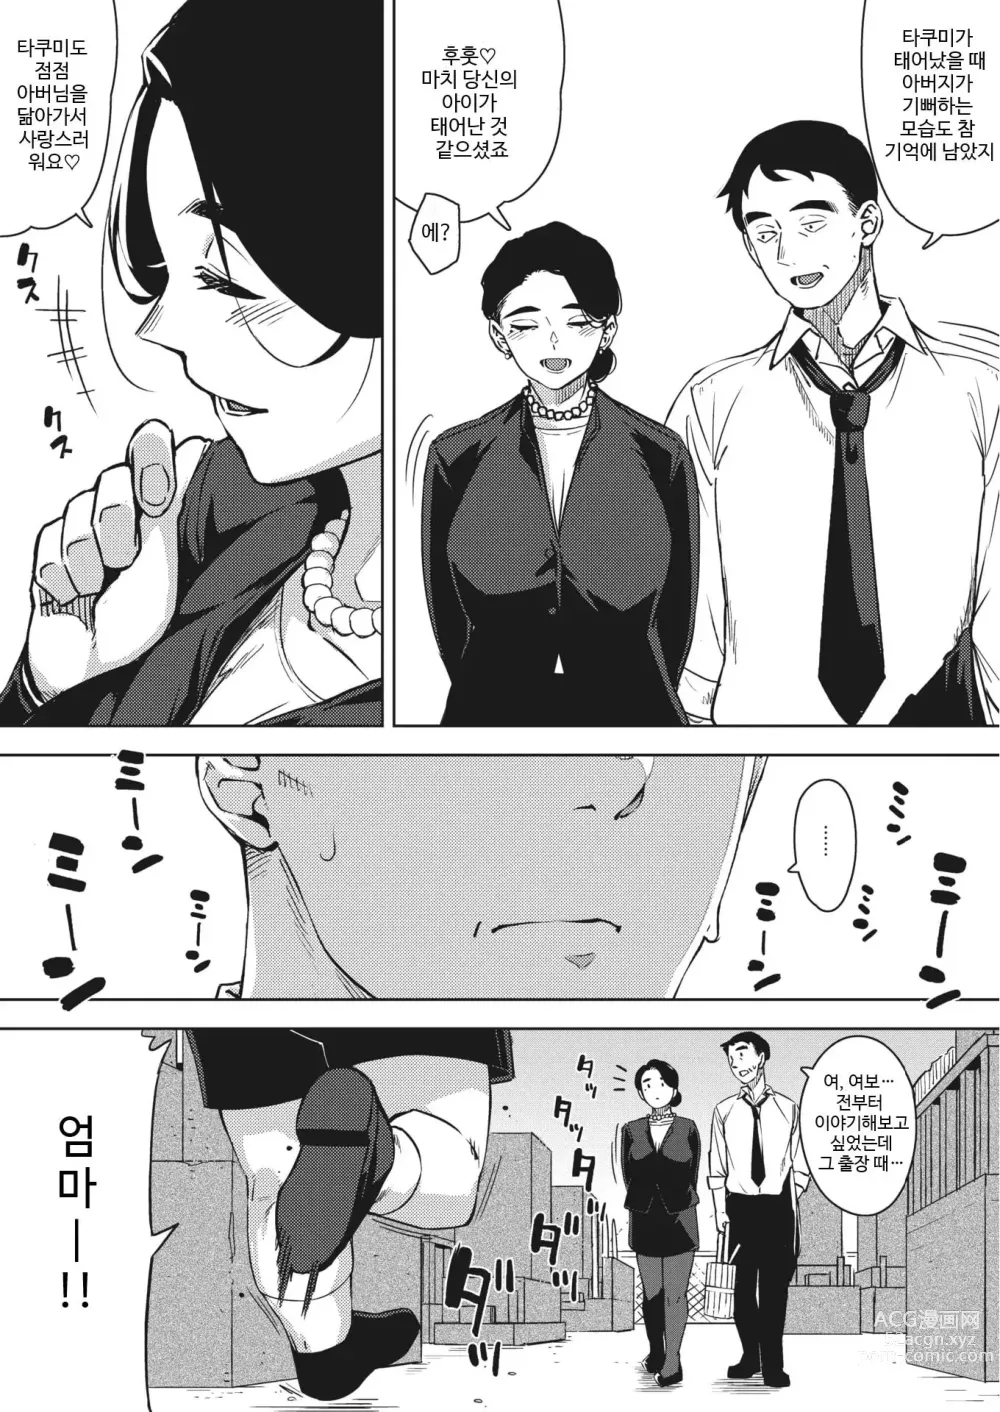 Page 200 of manga Hitozuma no Koukishin